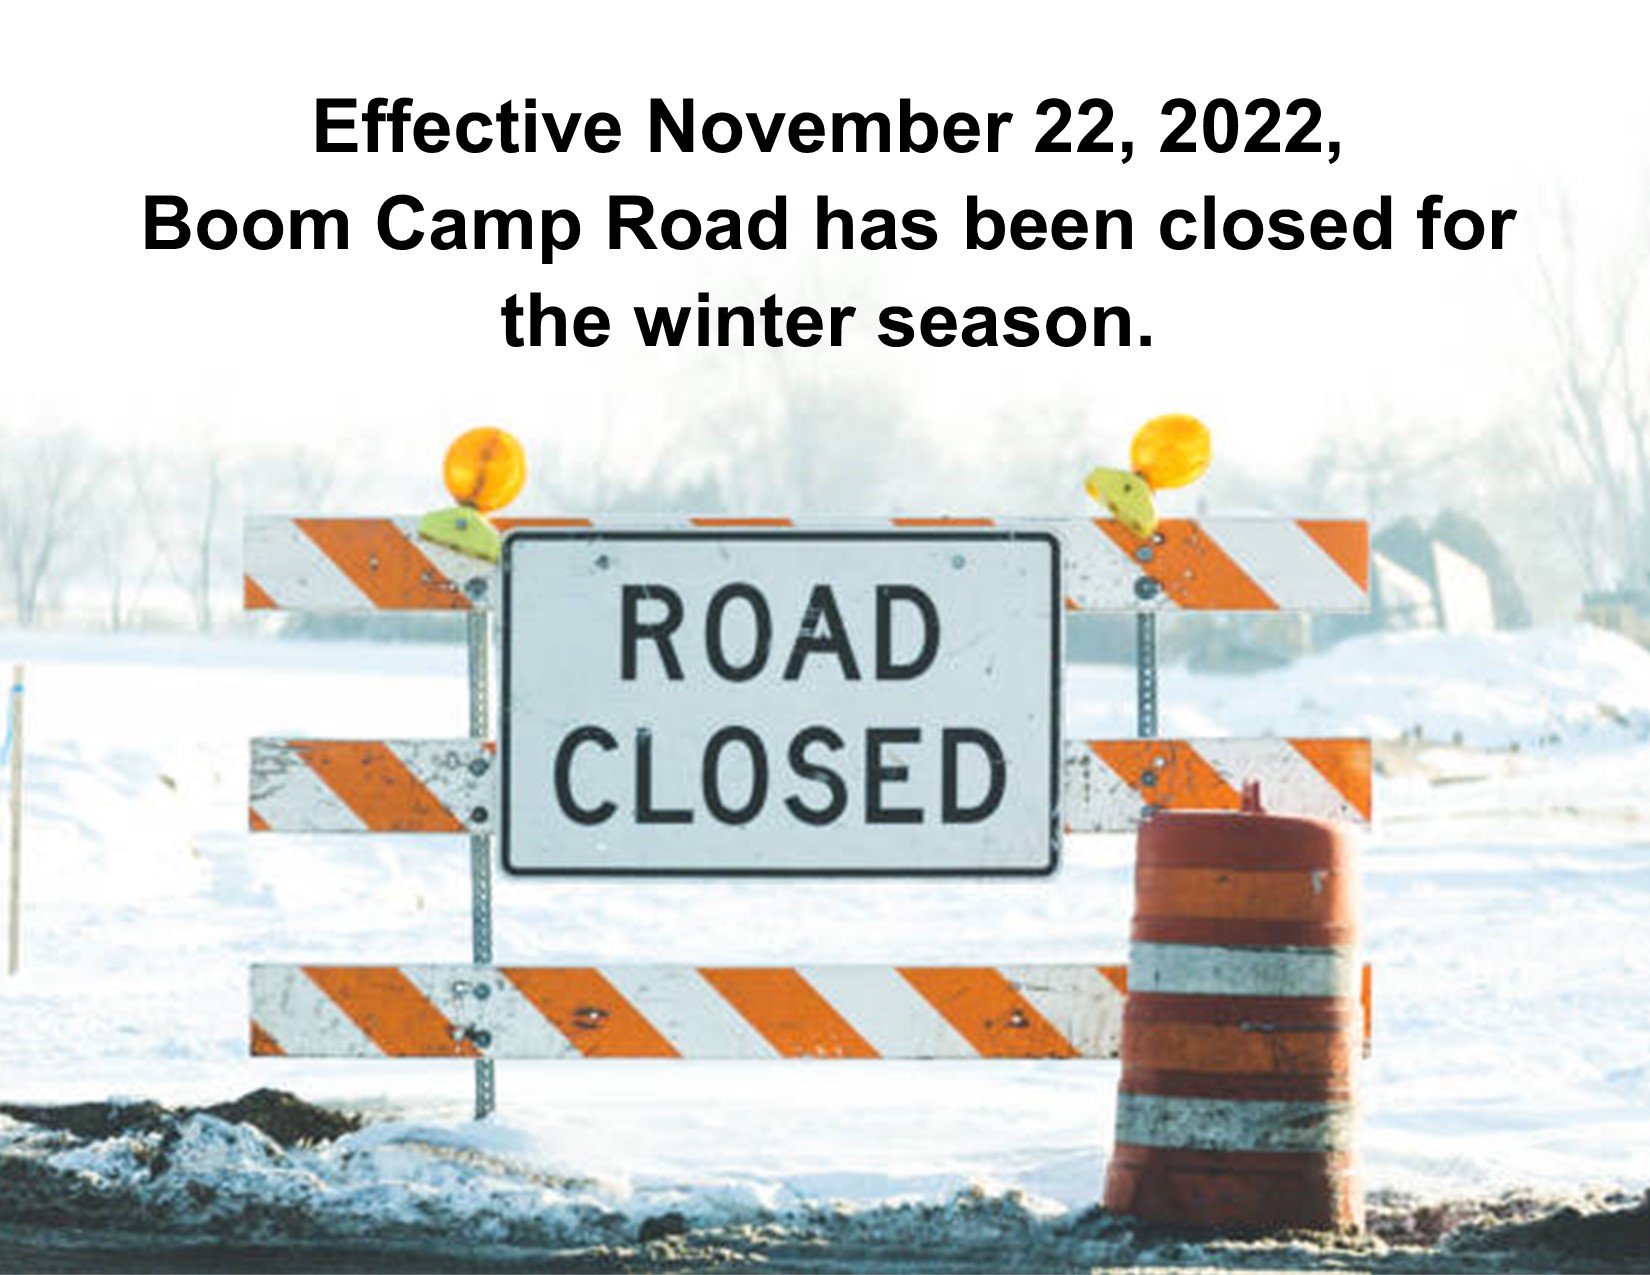 notice of boom camp road closure